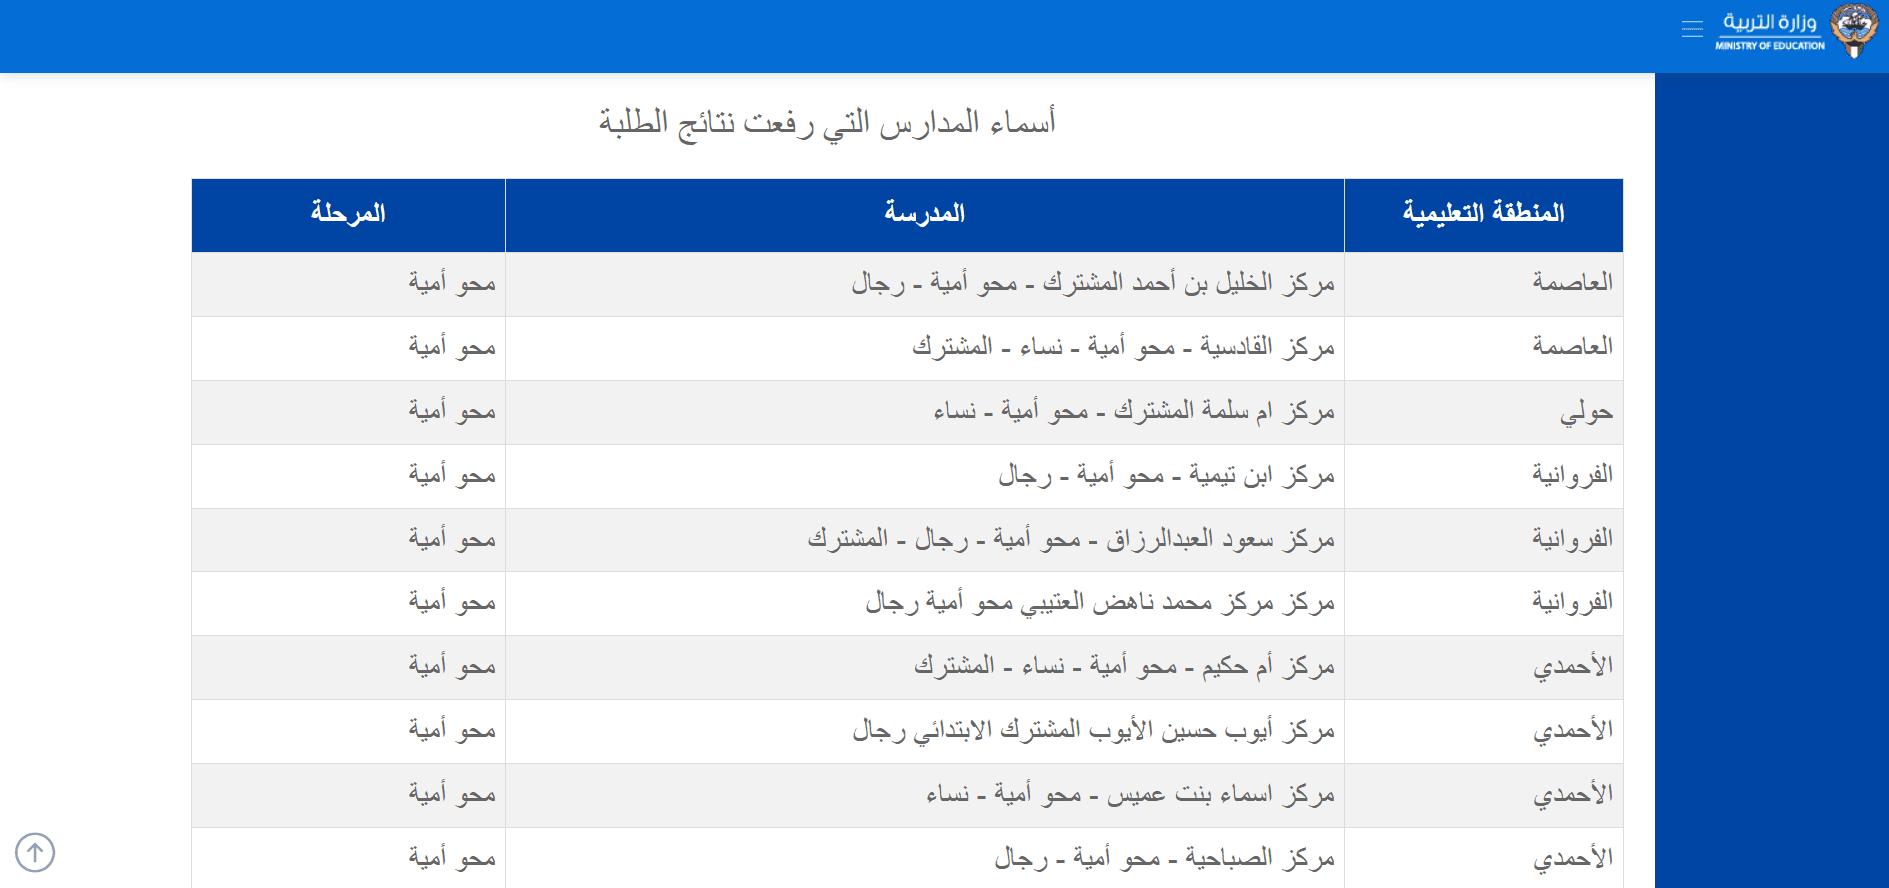 المدارس التي أعلنت نتائج الطلاب 2023 الكويت حتى الآن